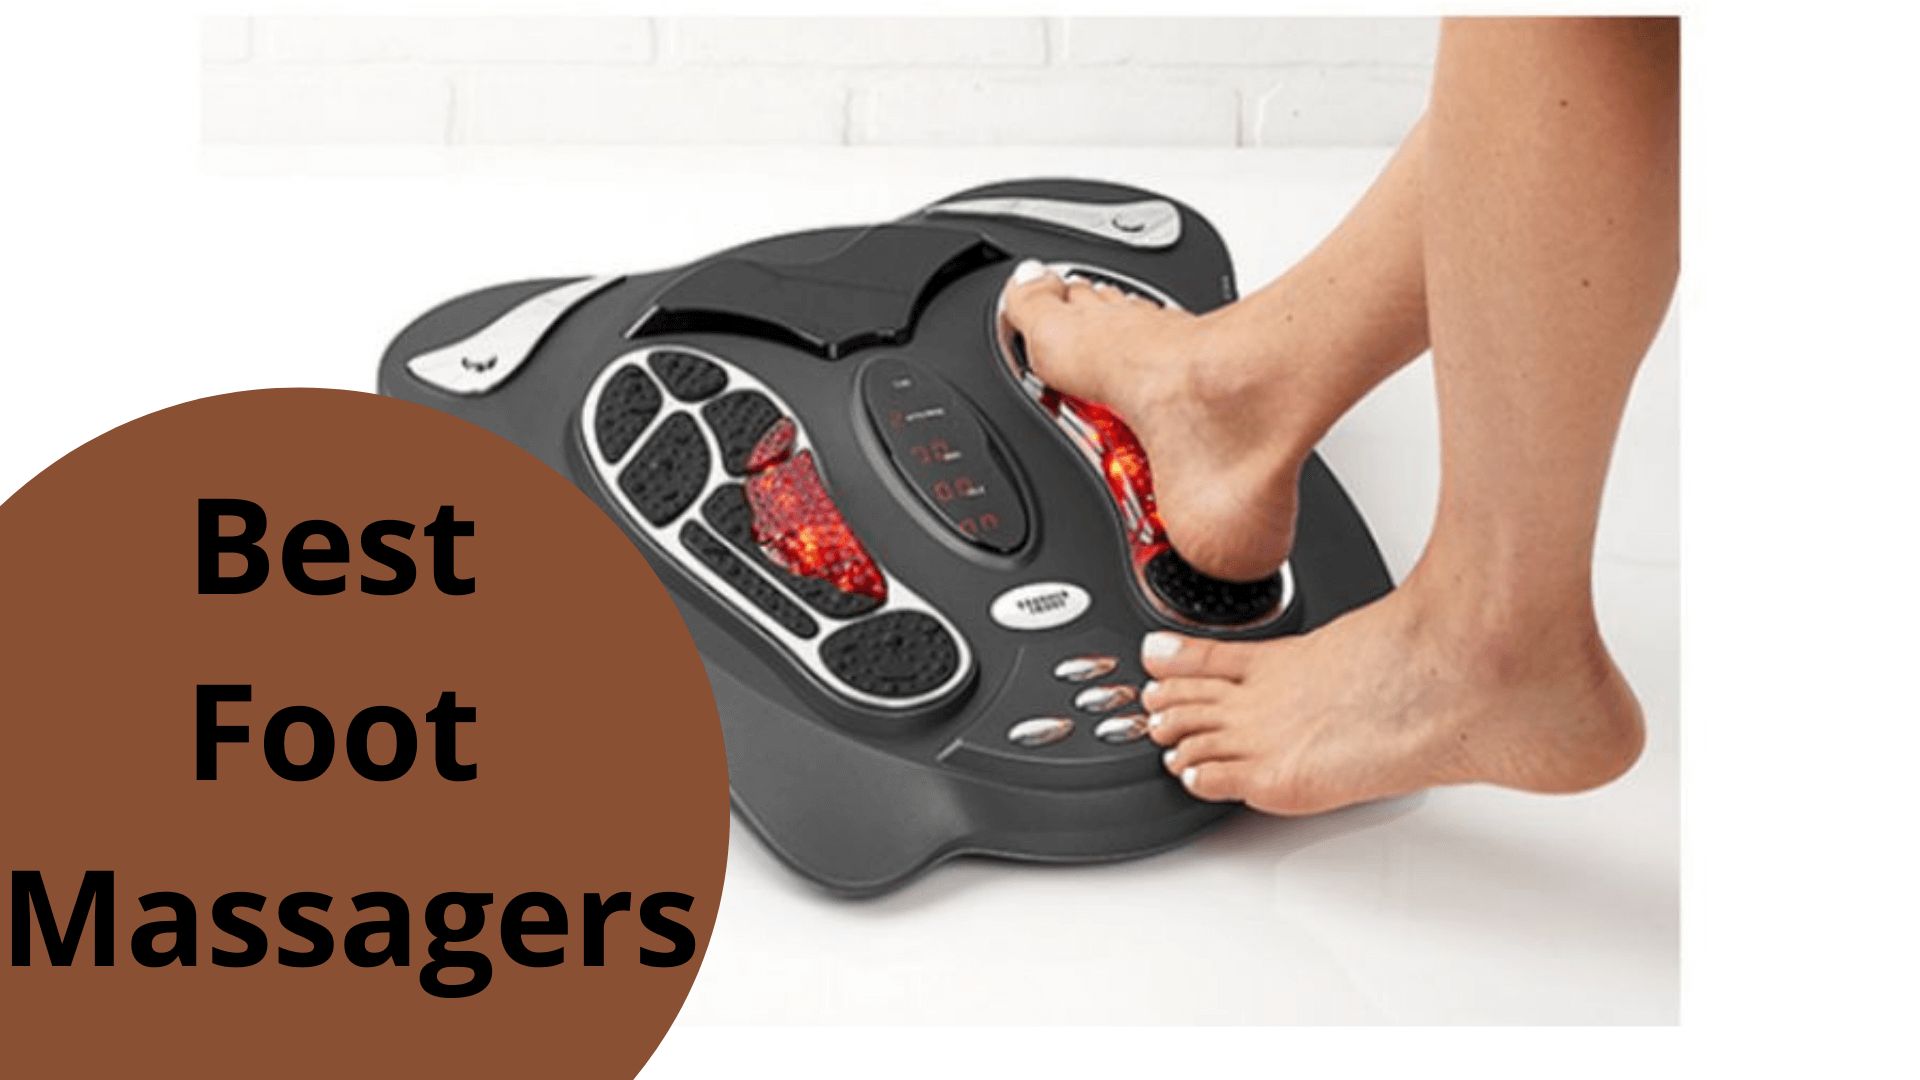 Best Foot Massagers